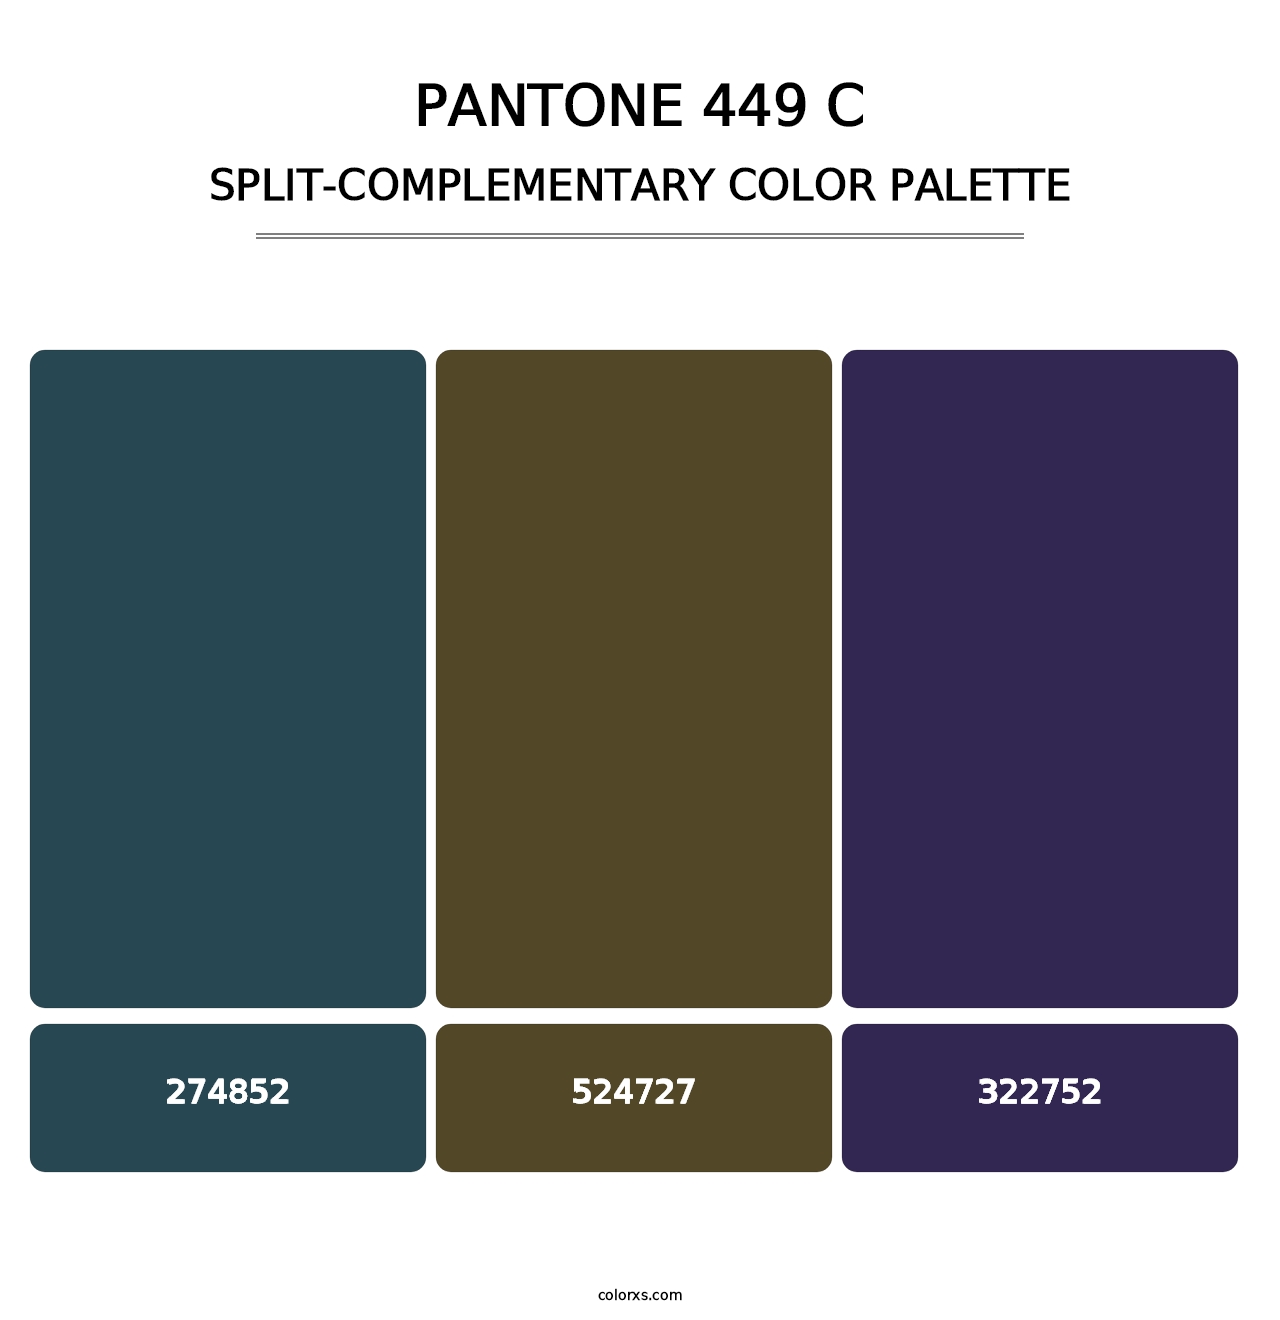 PANTONE 449 C - Split-Complementary Color Palette